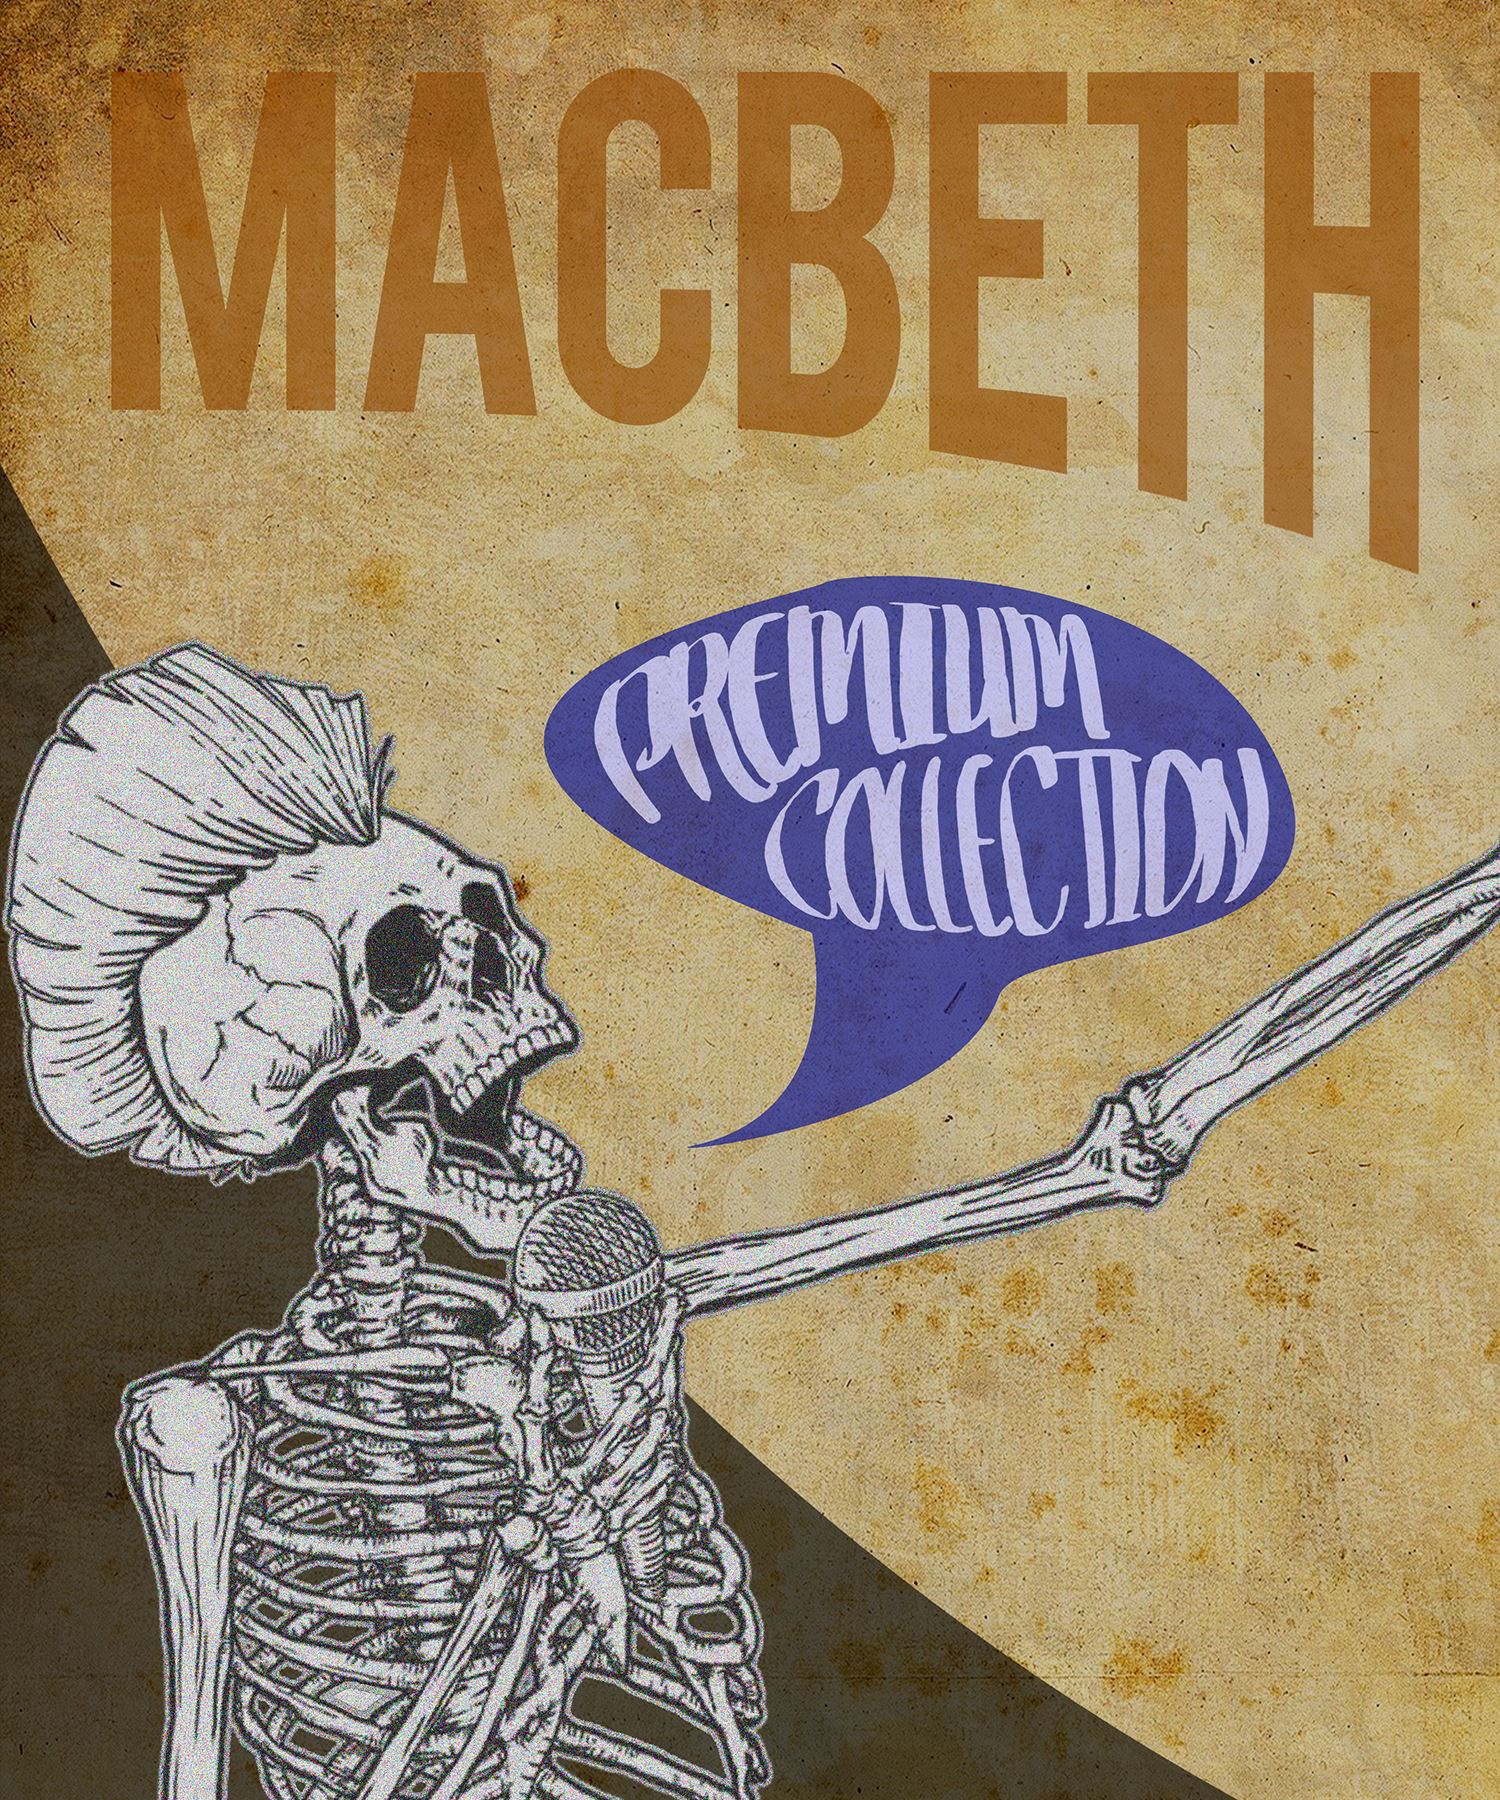 Macbeth Brief Encounters